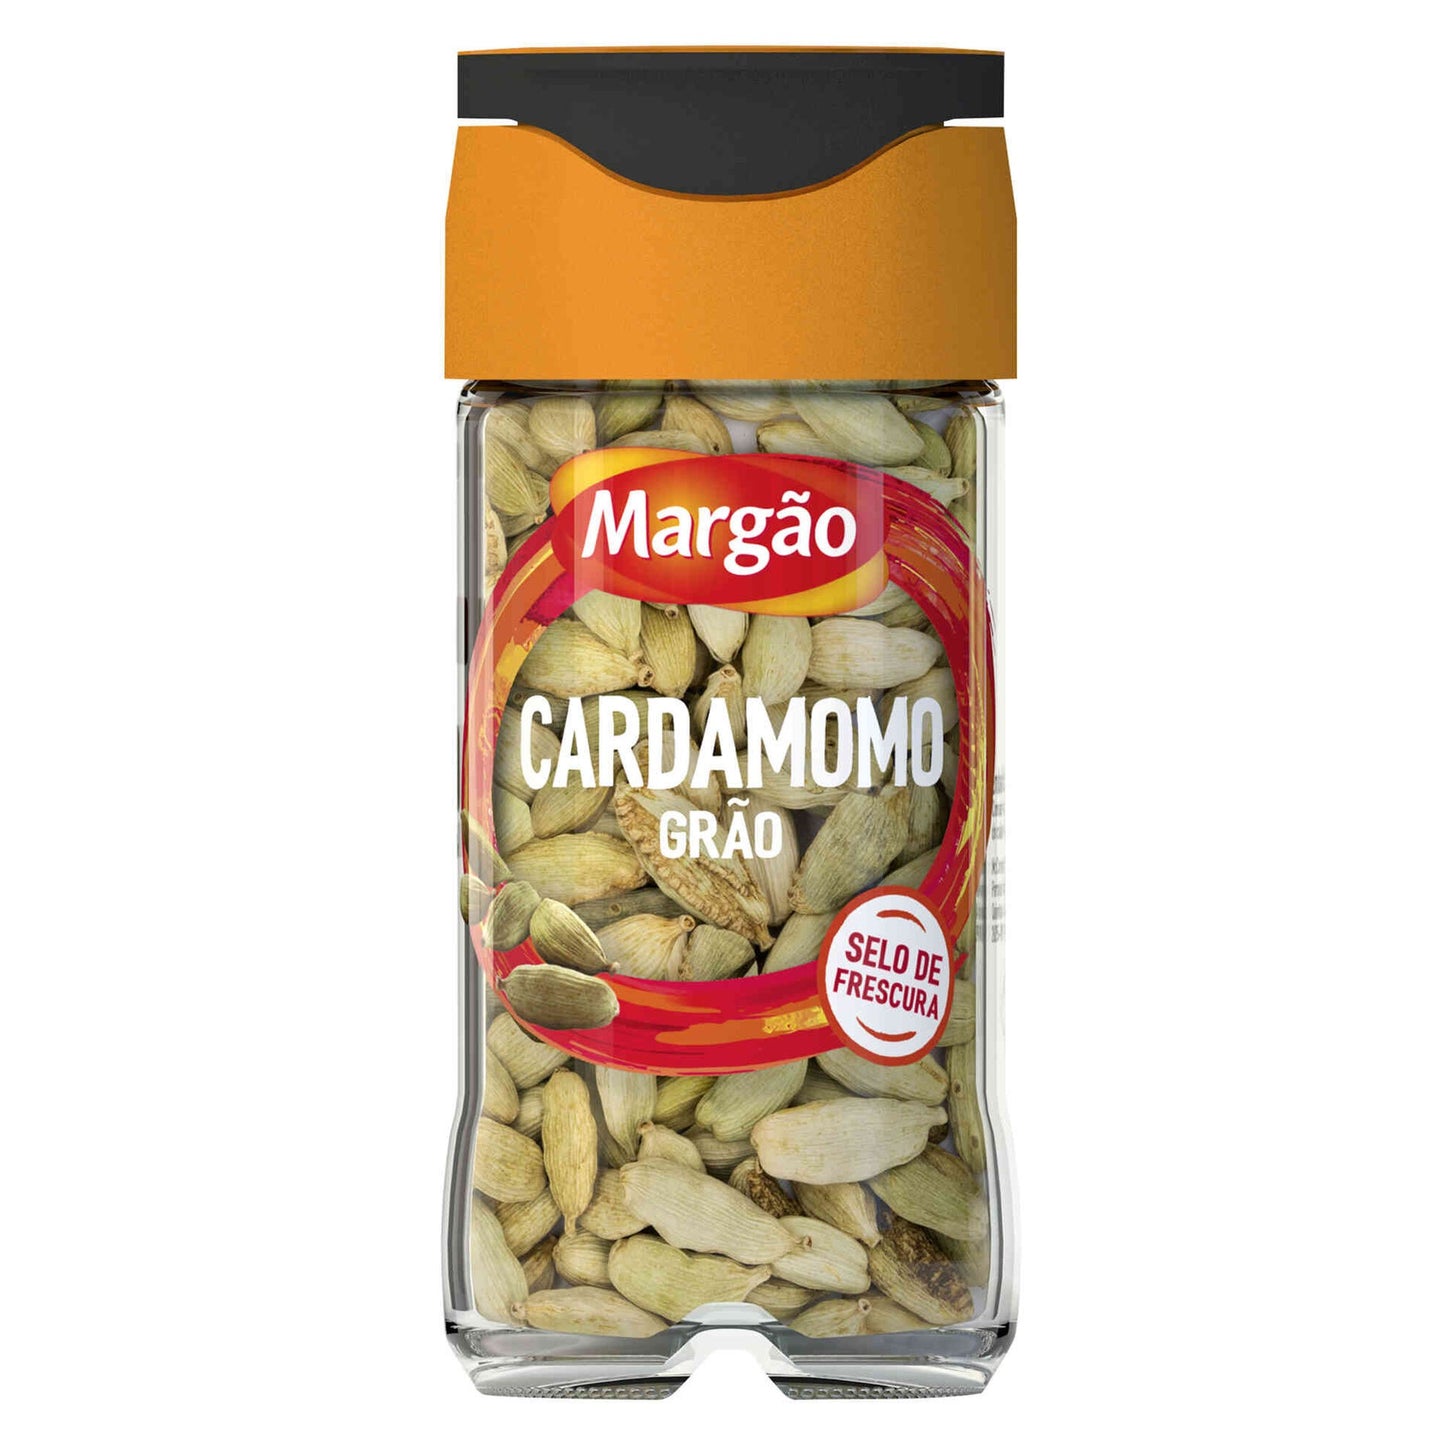 Cardamom Grain in Jar 24g